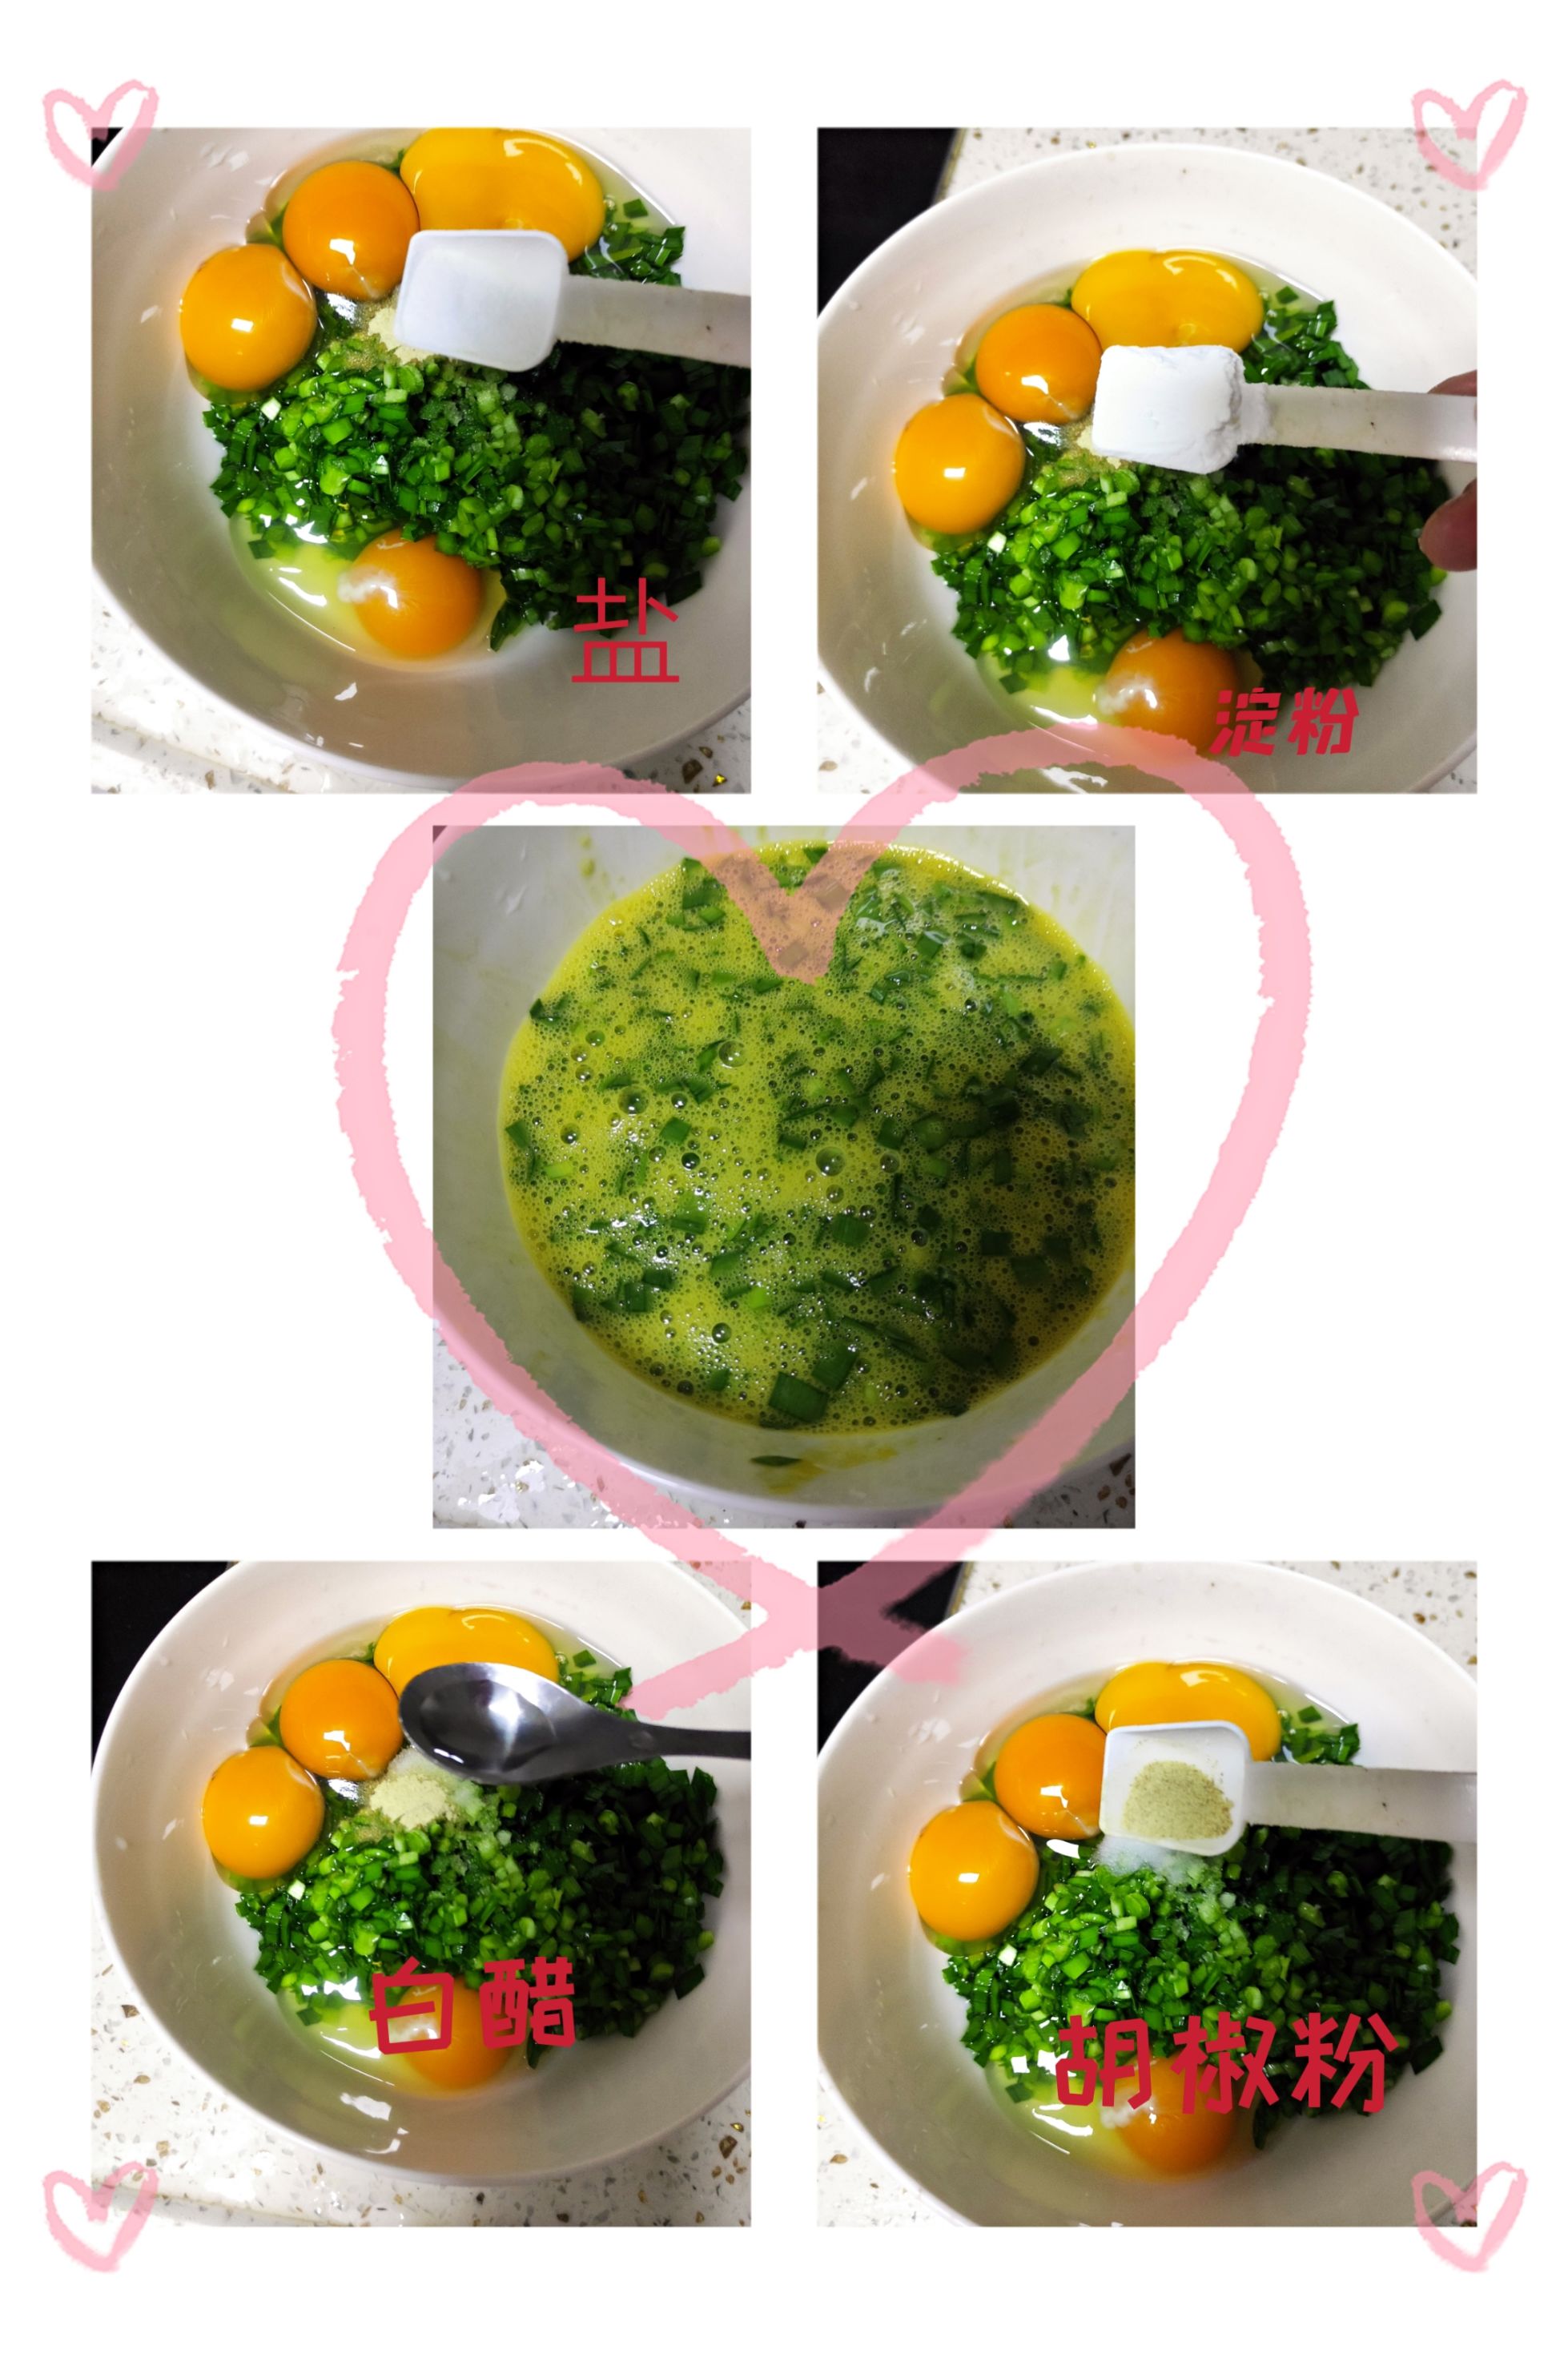 【小飯盒】老話說韭菜就是九個菜 今天分享一個 韭菜煎蛋